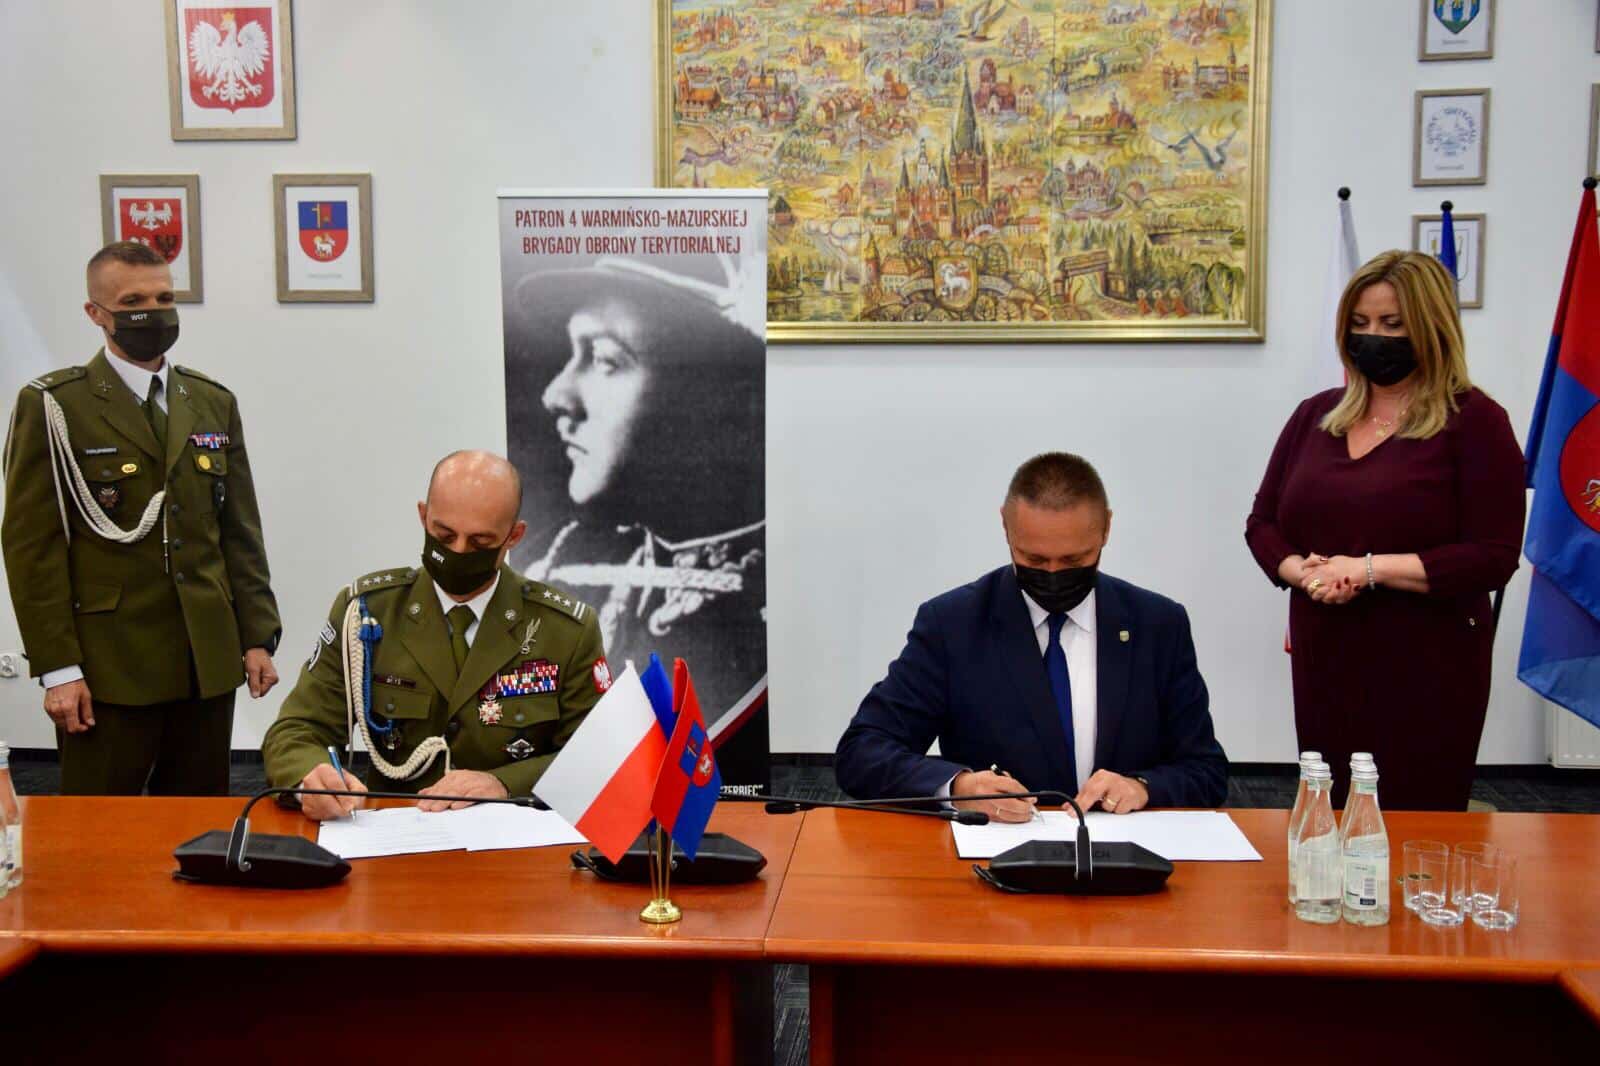 Terytorialsi podpisali porozumienie ze starostą olsztyńskim wojsko Olsztyn, Wiadomości, zemptypost, zPAP